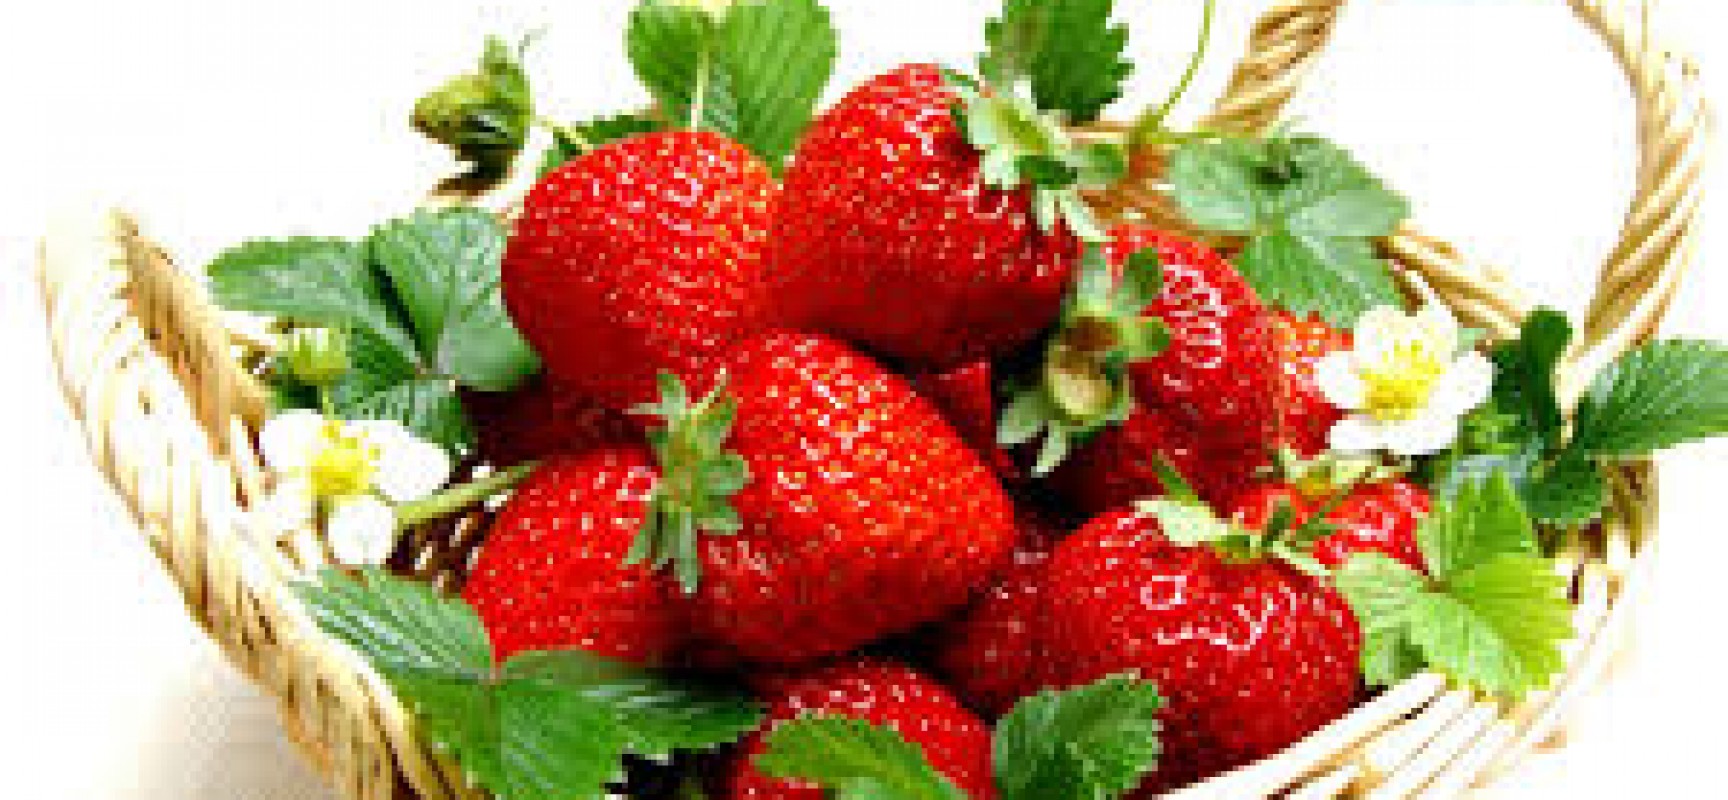 Strawberry Pleasures